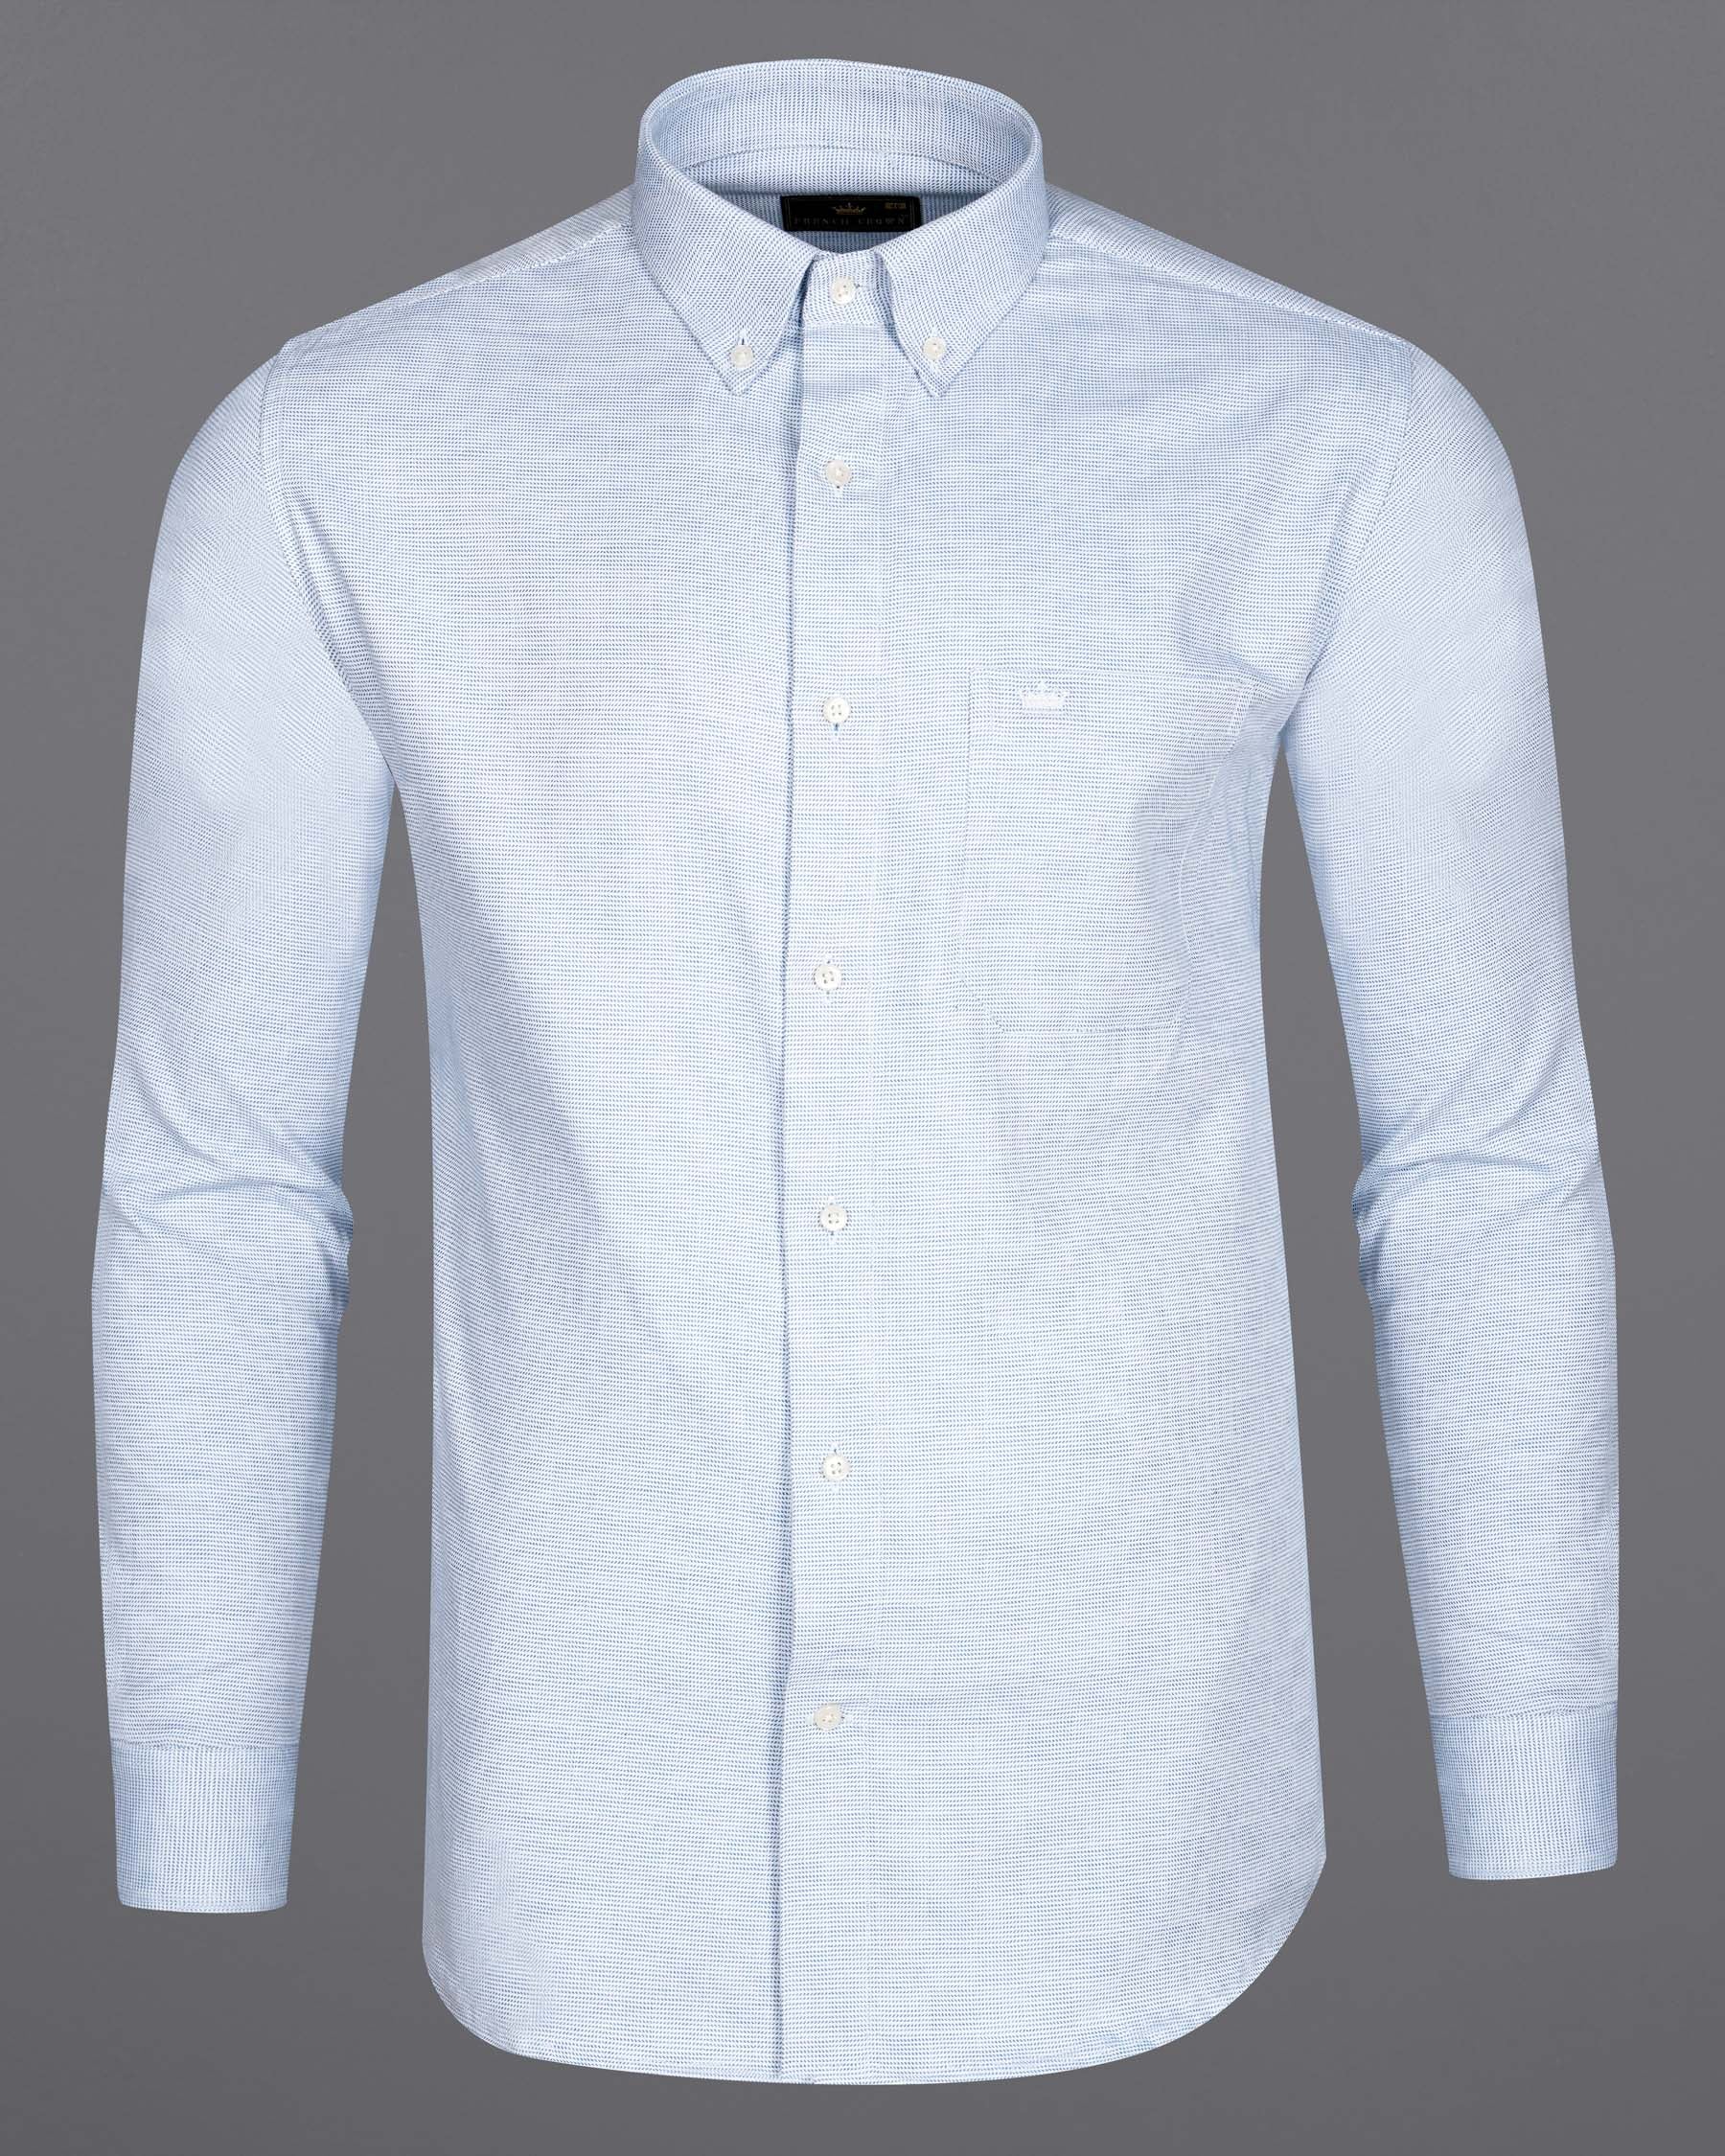 Ship Cove Blue and White Dobby Textured Premium Giza Cotton Shirt